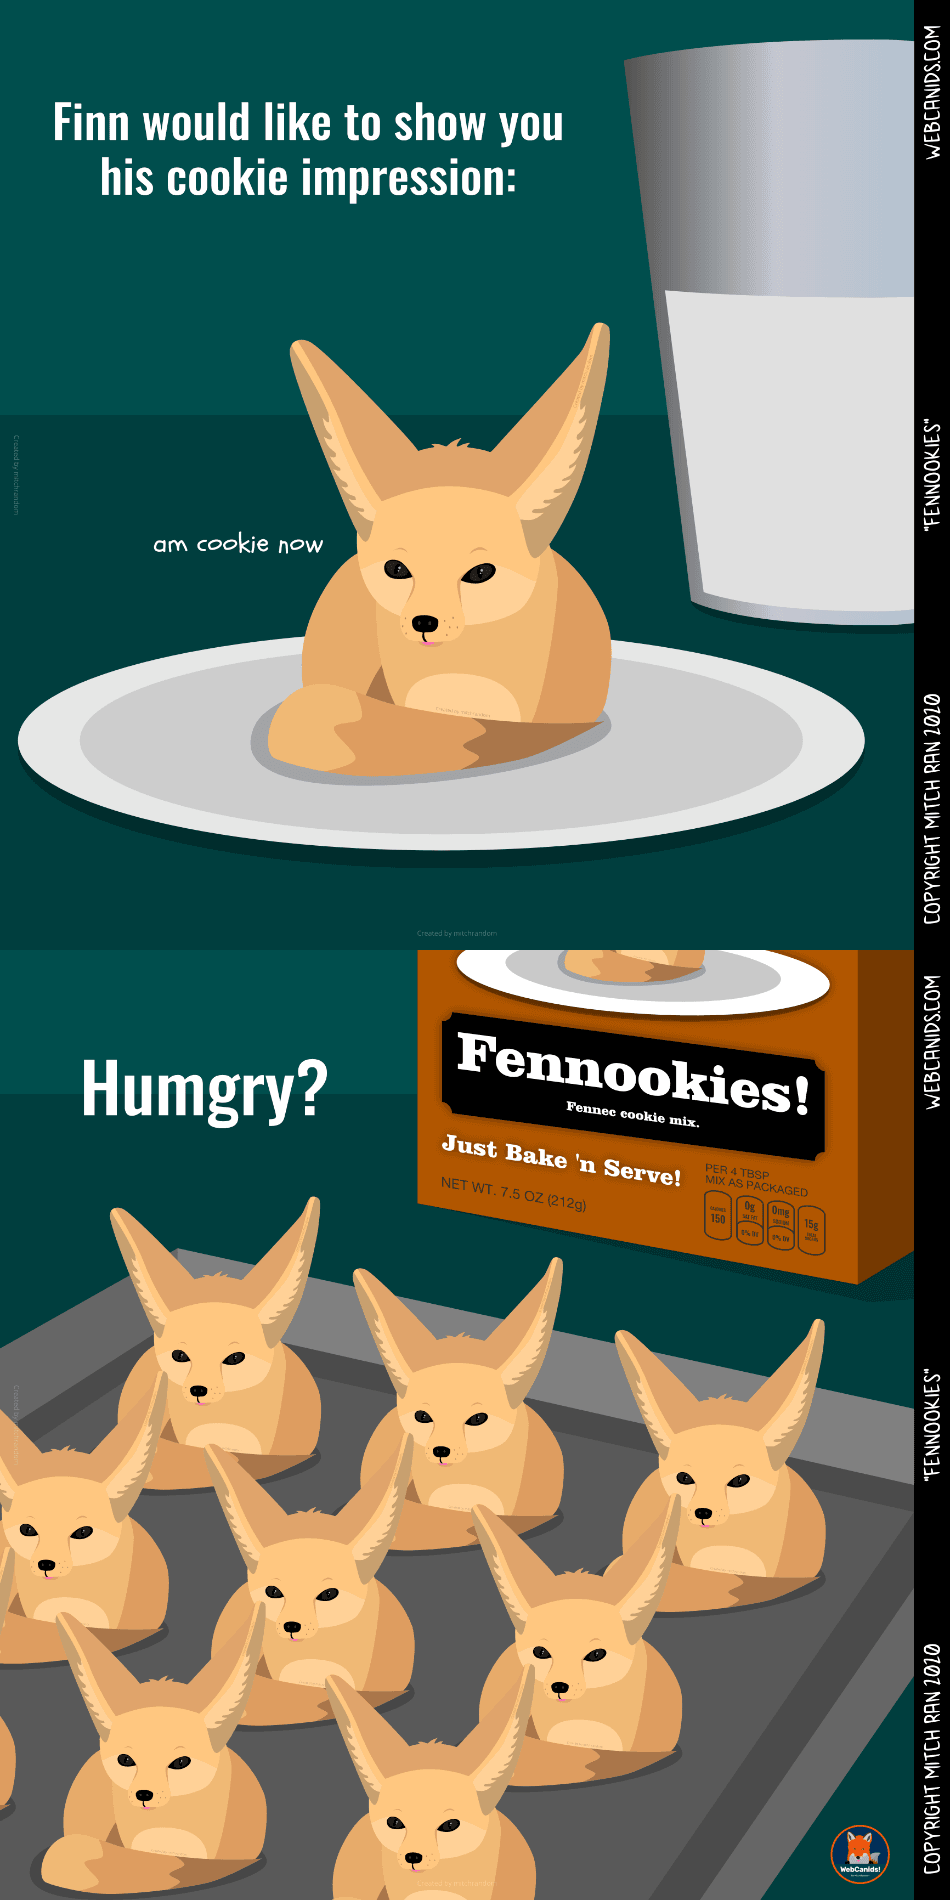 Fennookies